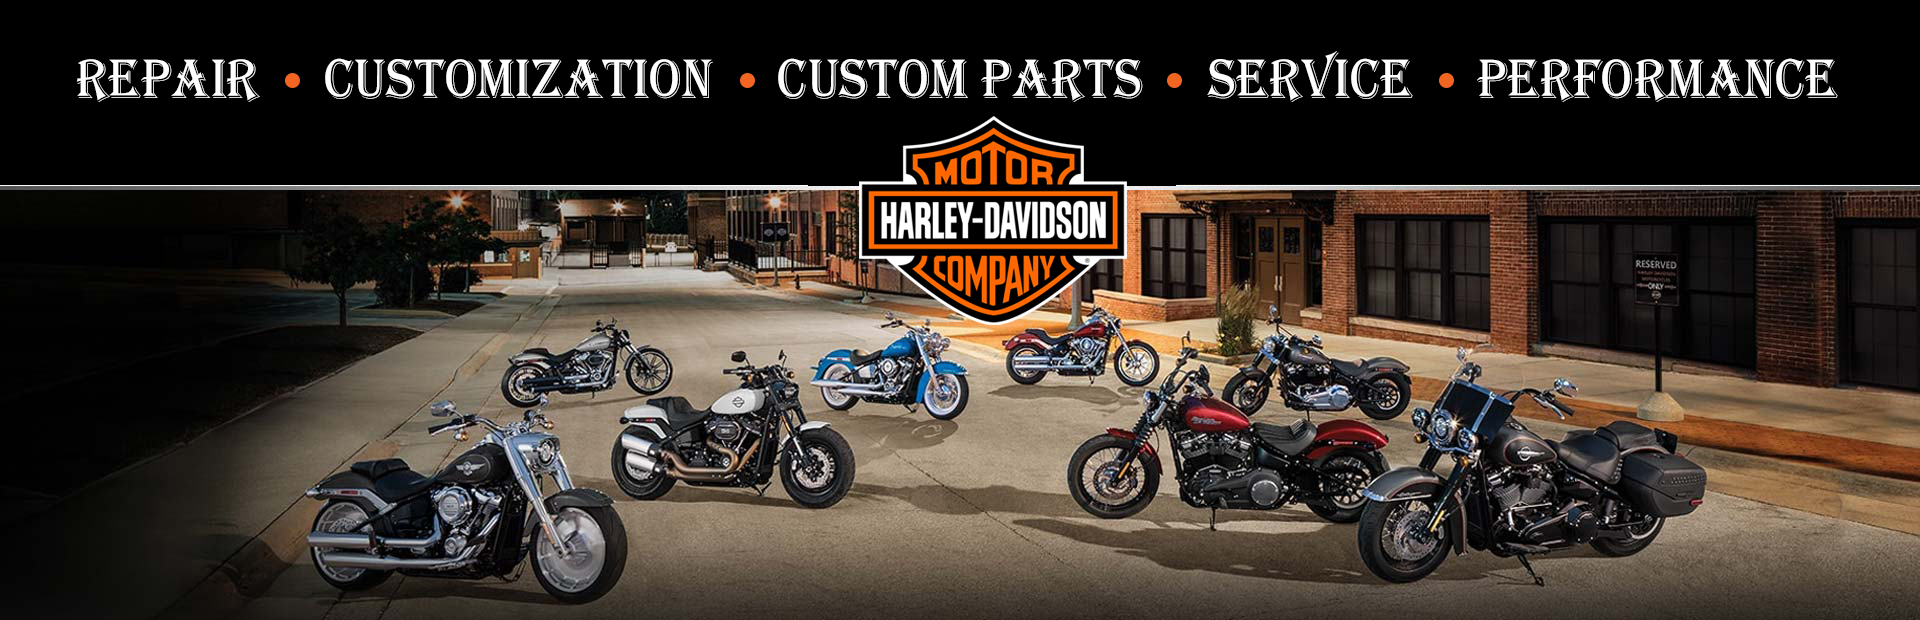 Harley Davidson Repair Shop in Northern, VA